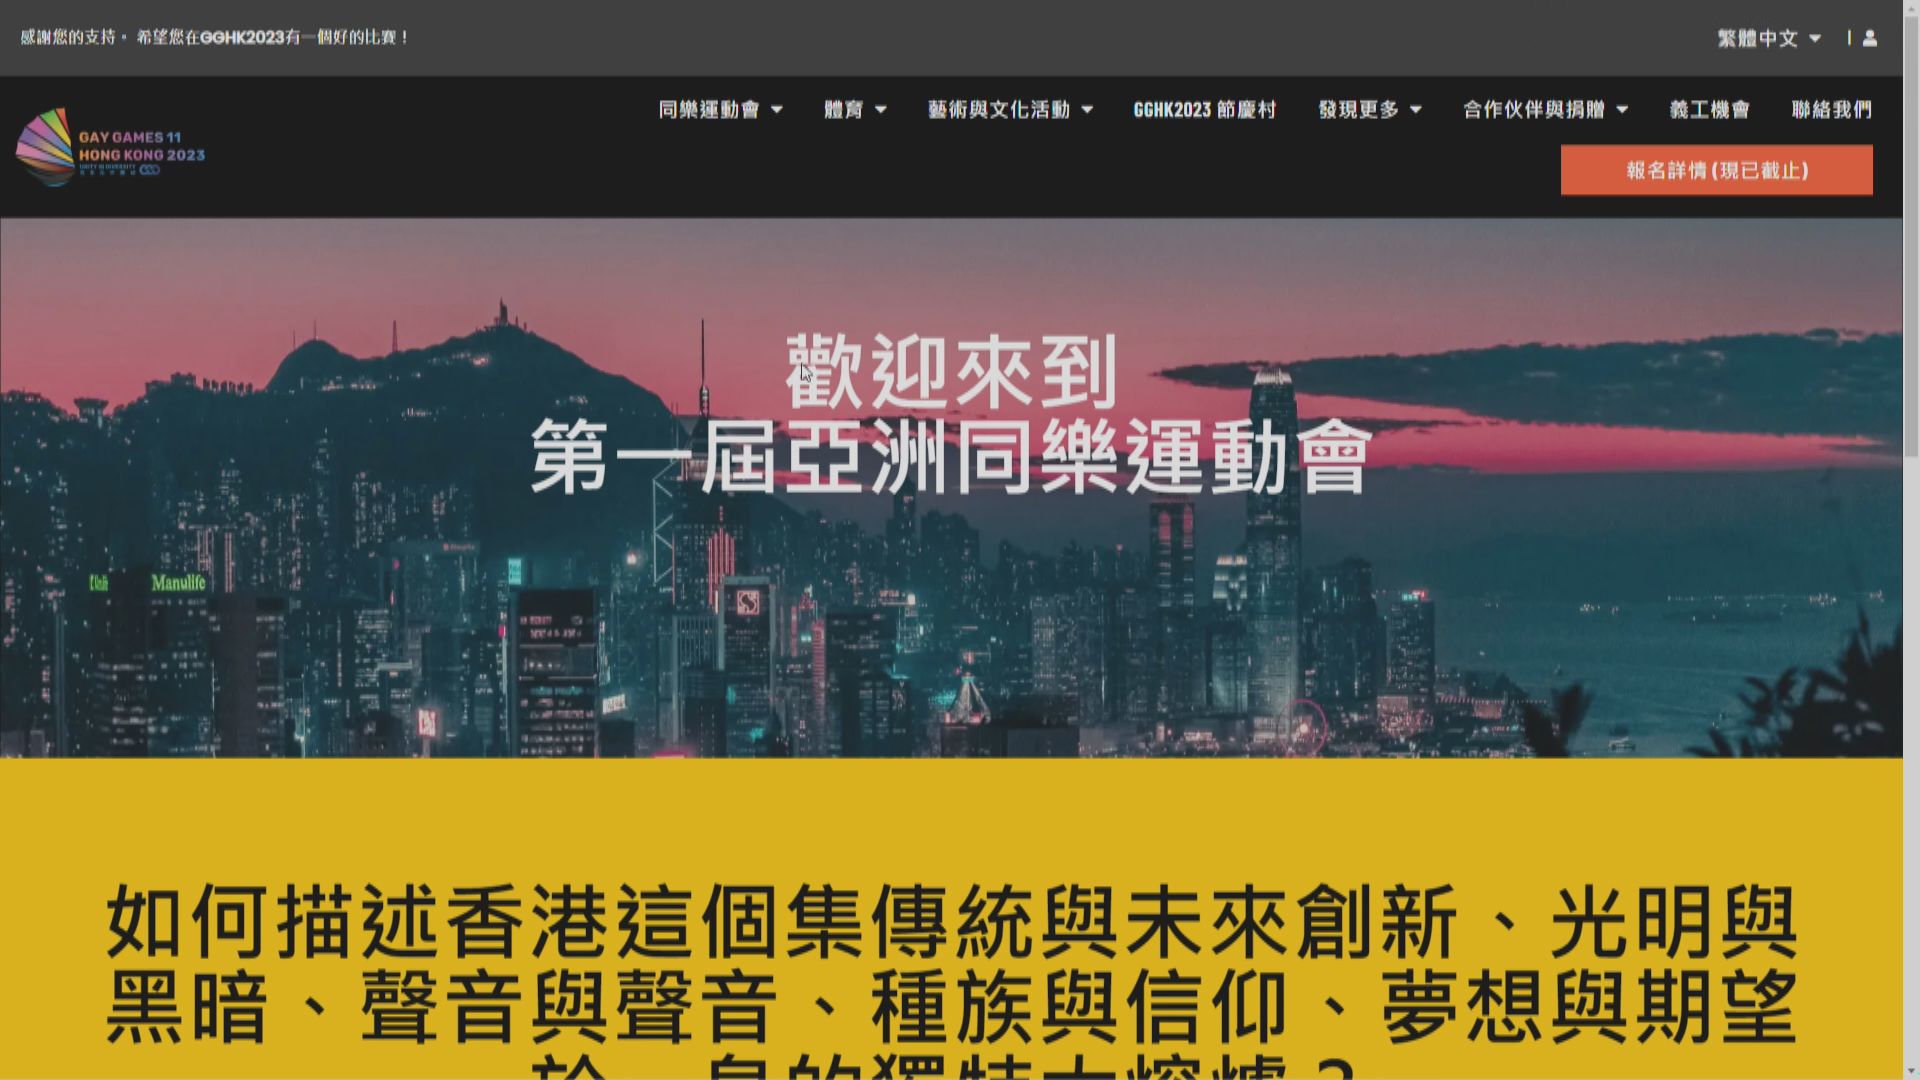 同樂運動會11月香港舉行 葉劉淑儀將任主禮嘉賓